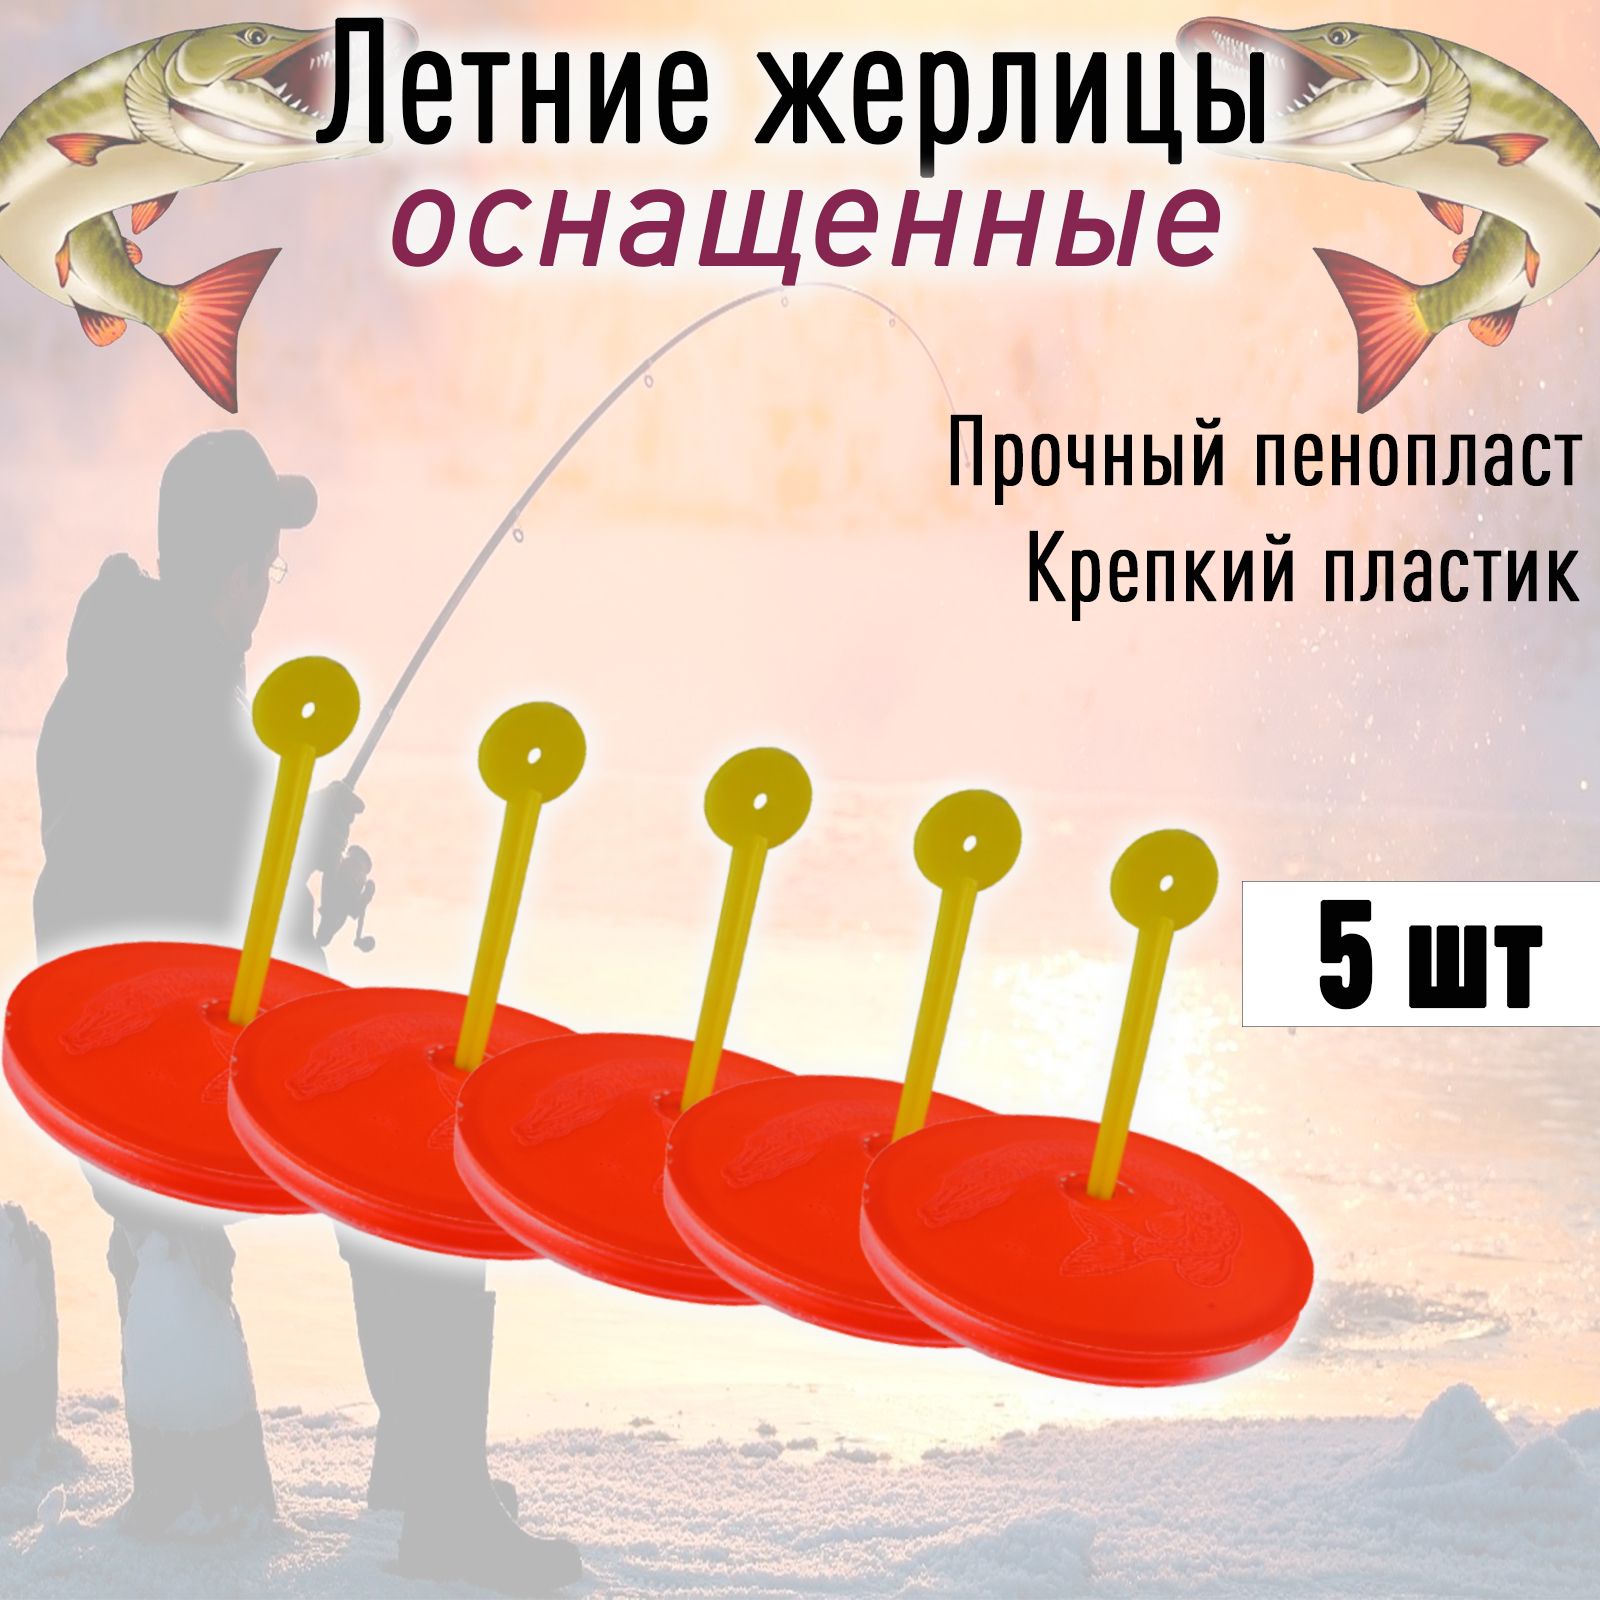 Кружок рыболовный для летней рыбалки жерлицы на щуку